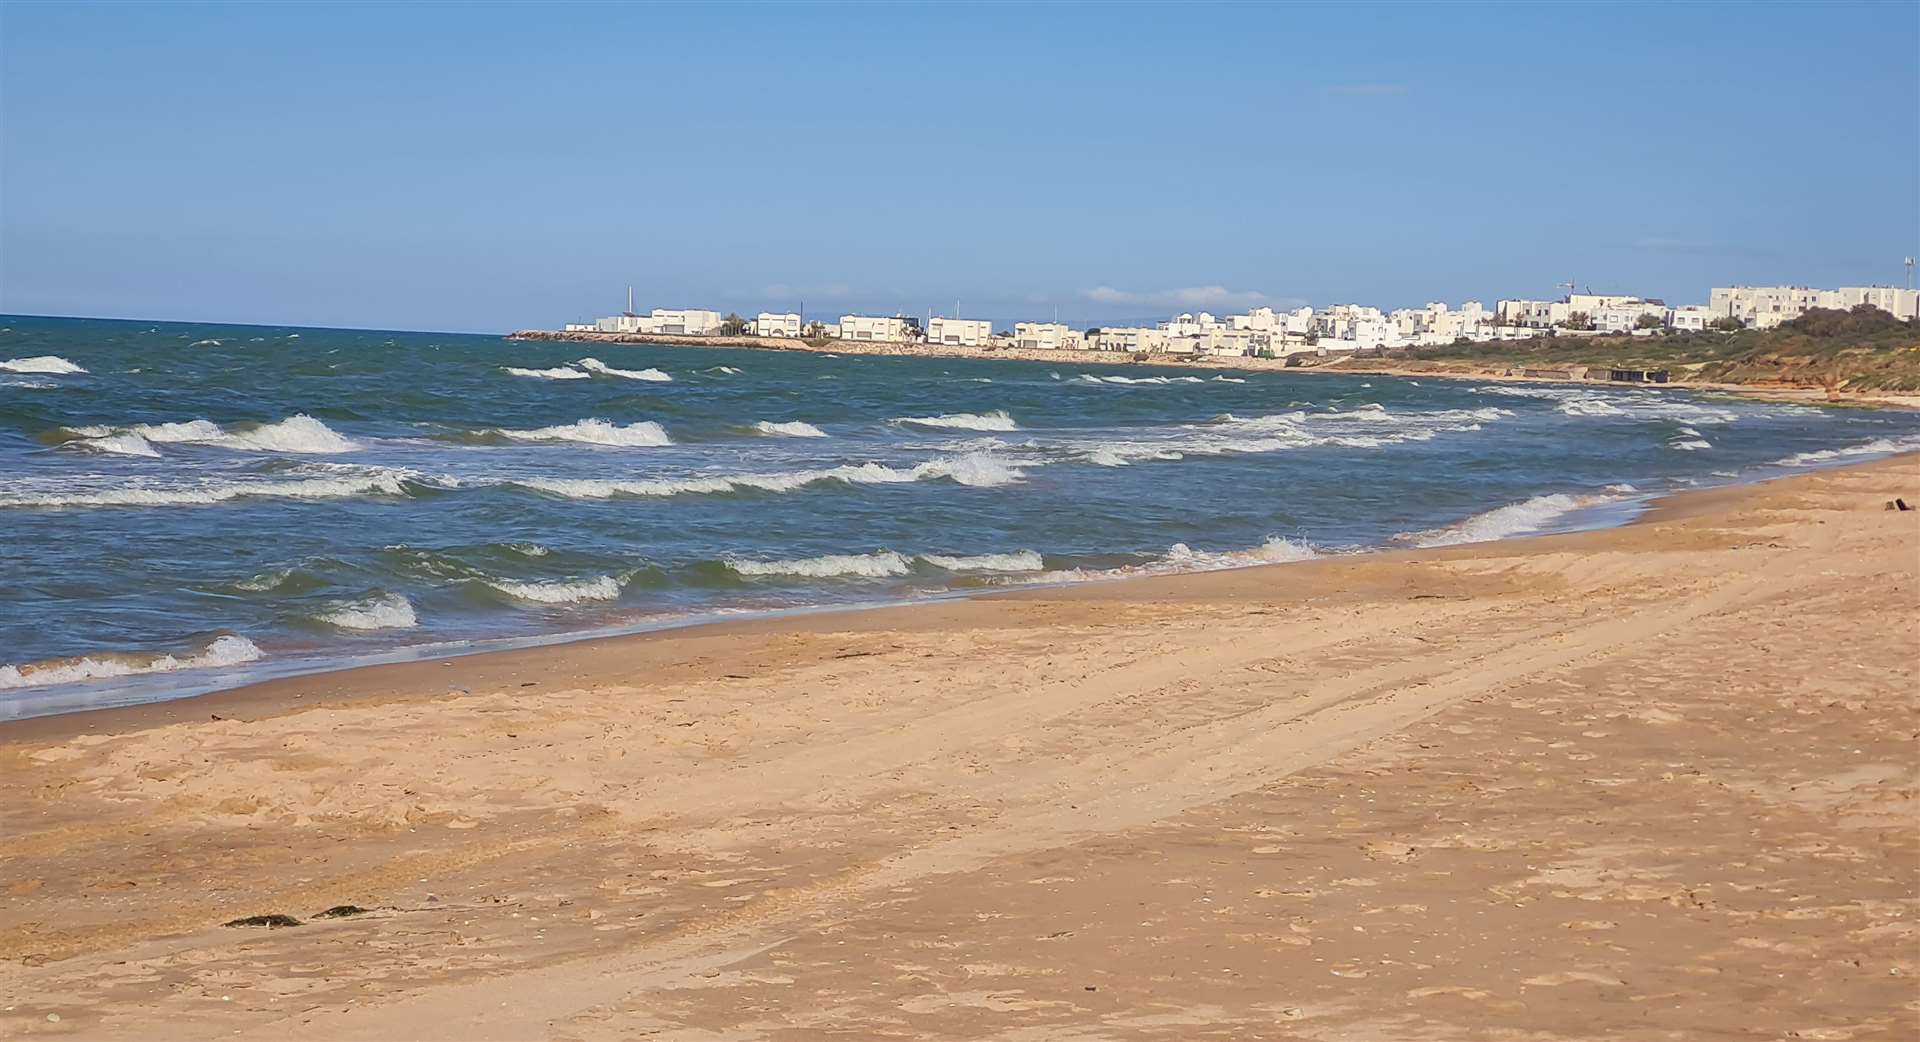 Tunisia boasts many beautiful sandy beaches